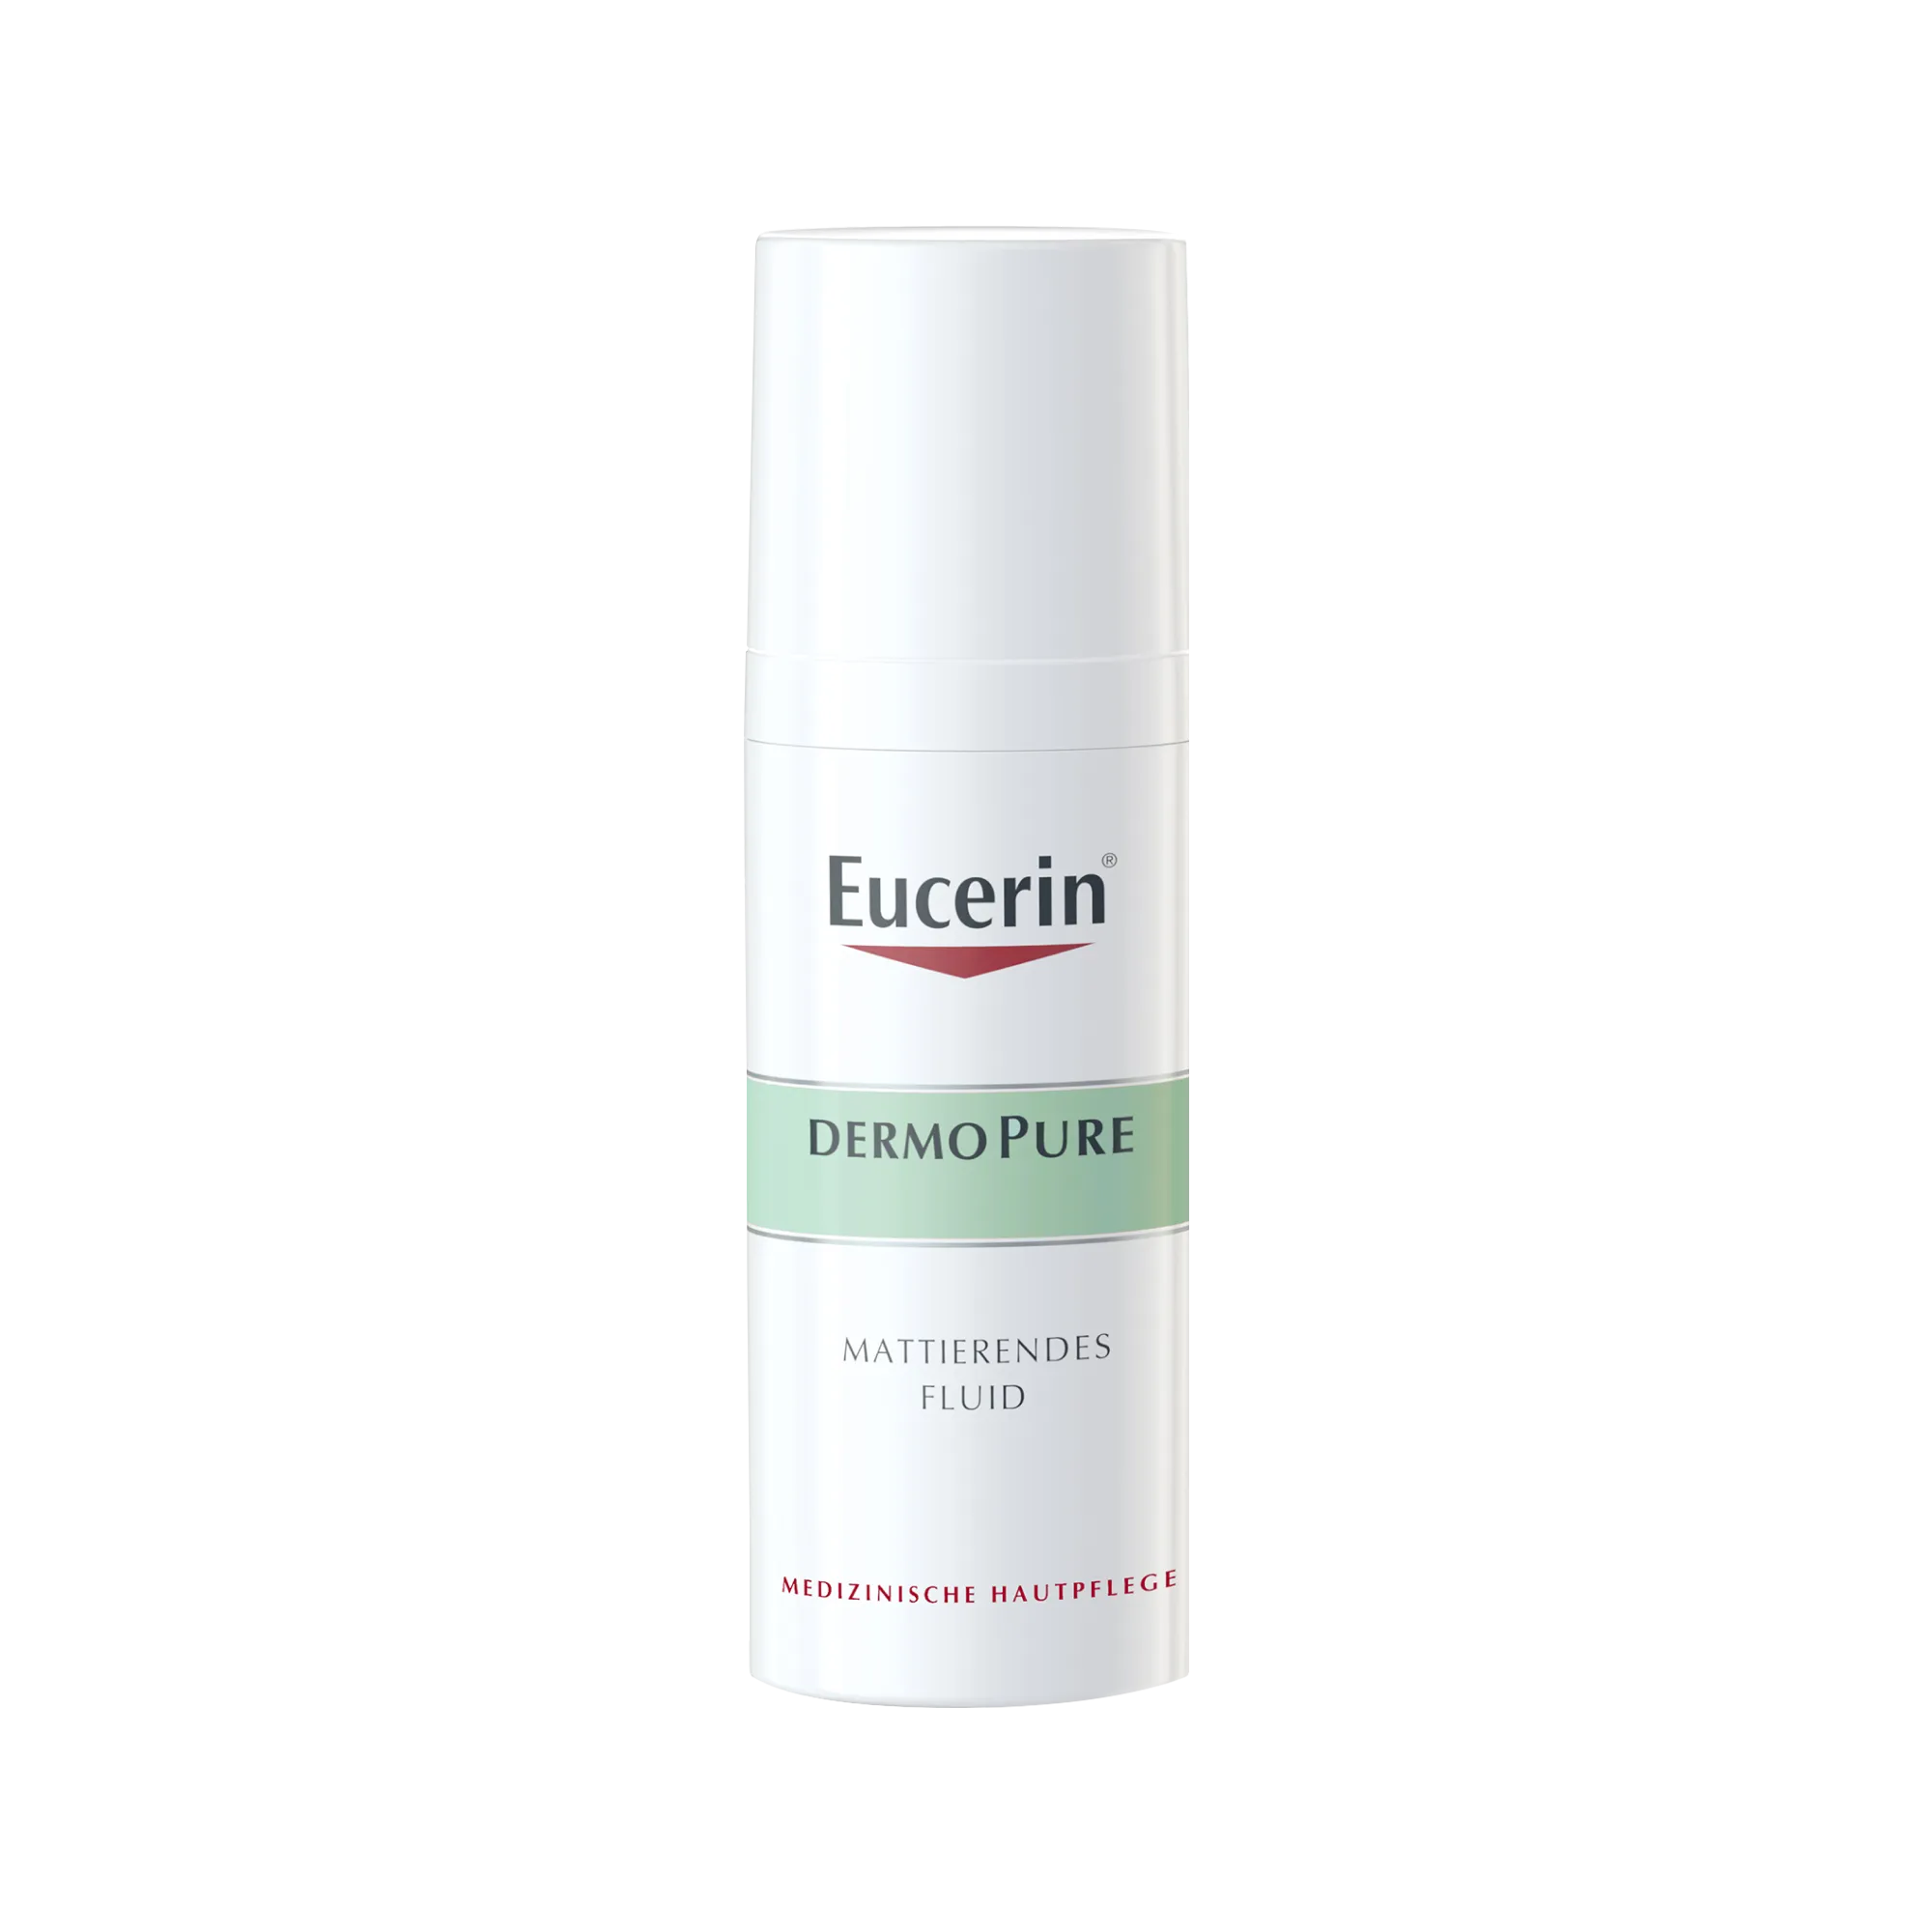 Eucerin DermoPure krem-fluid matujący do skóry ze skłonnością do trądziku, 50 ml